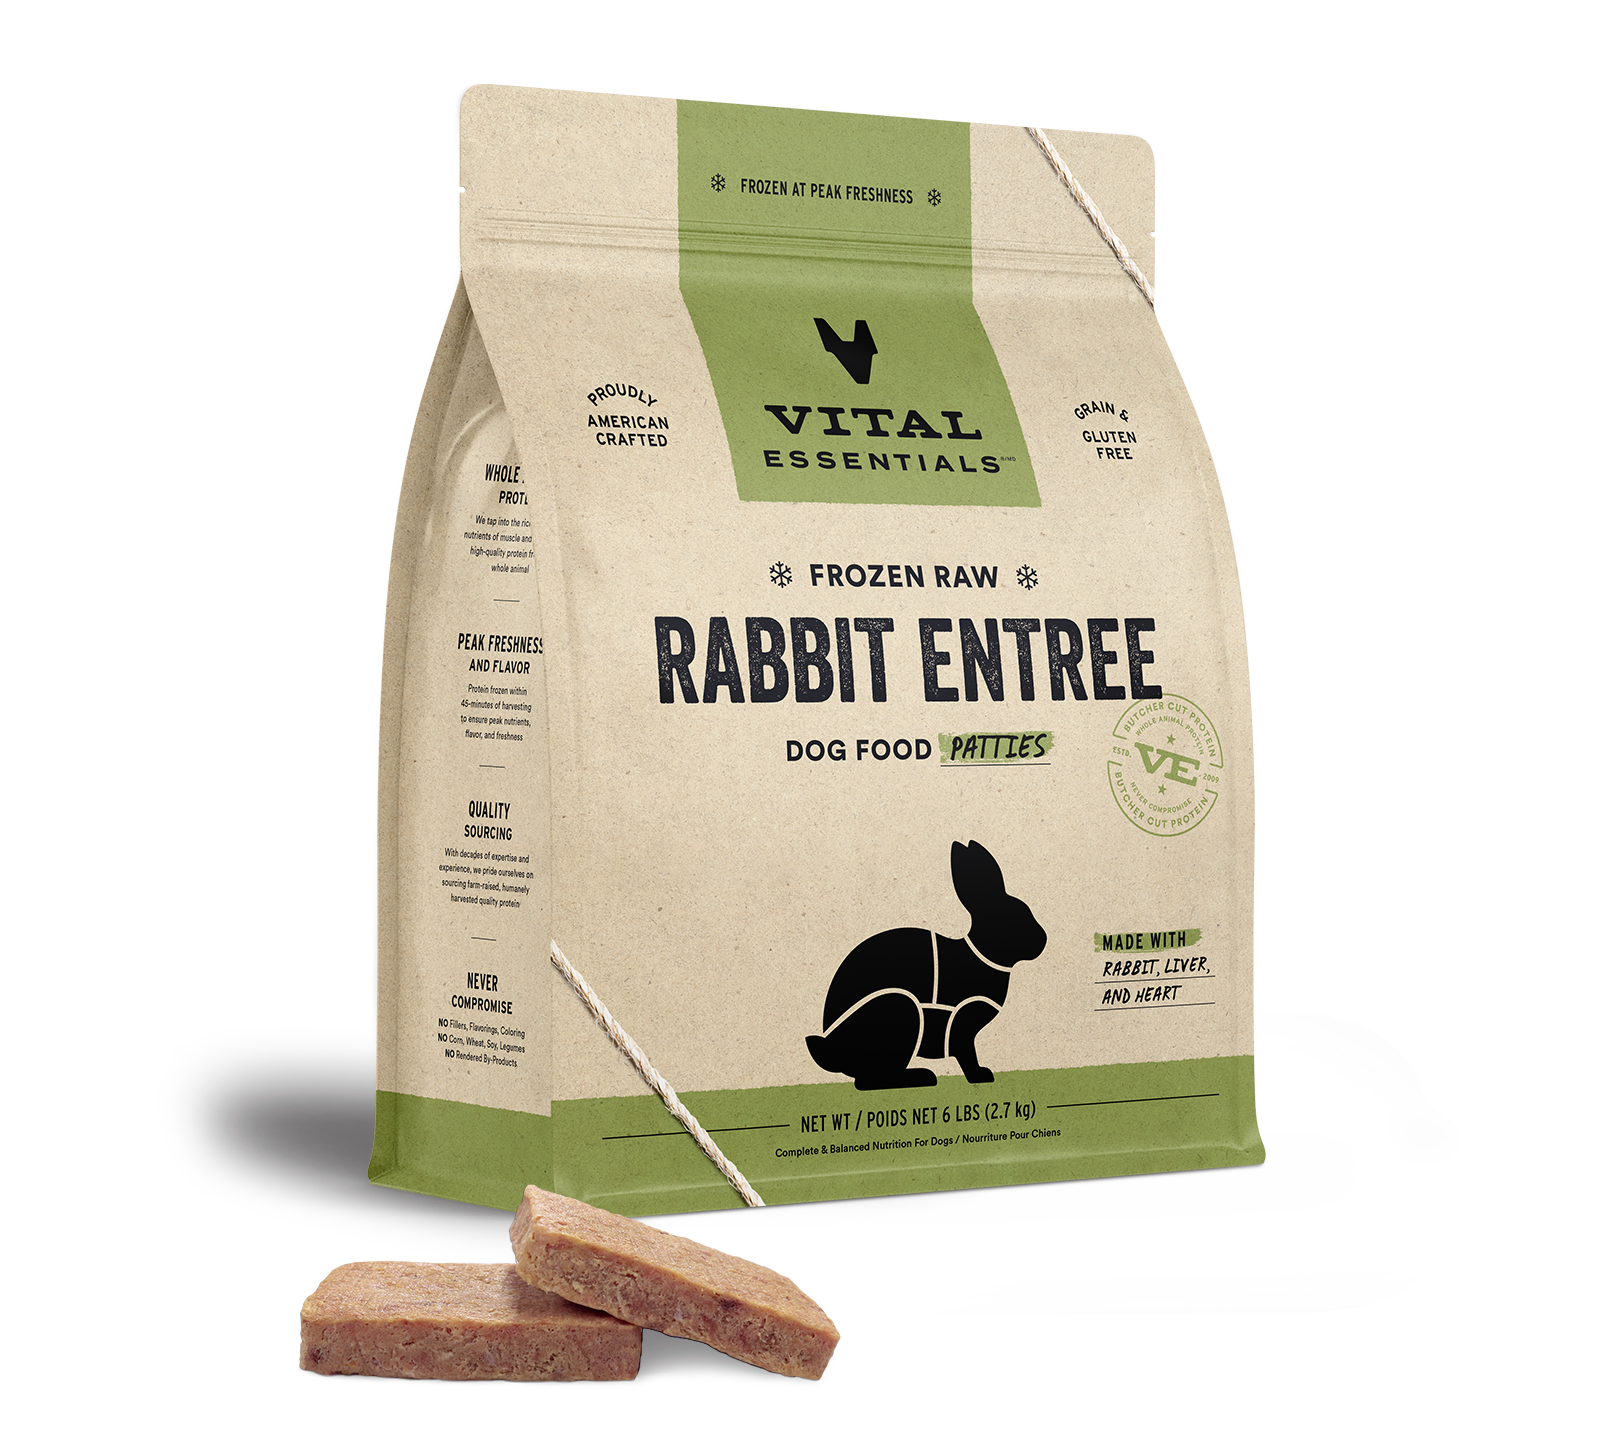 Vital Essentials Frozen Raw Rabbit Entree Dog Food Patties, 6 lbs - Healing/First Aid